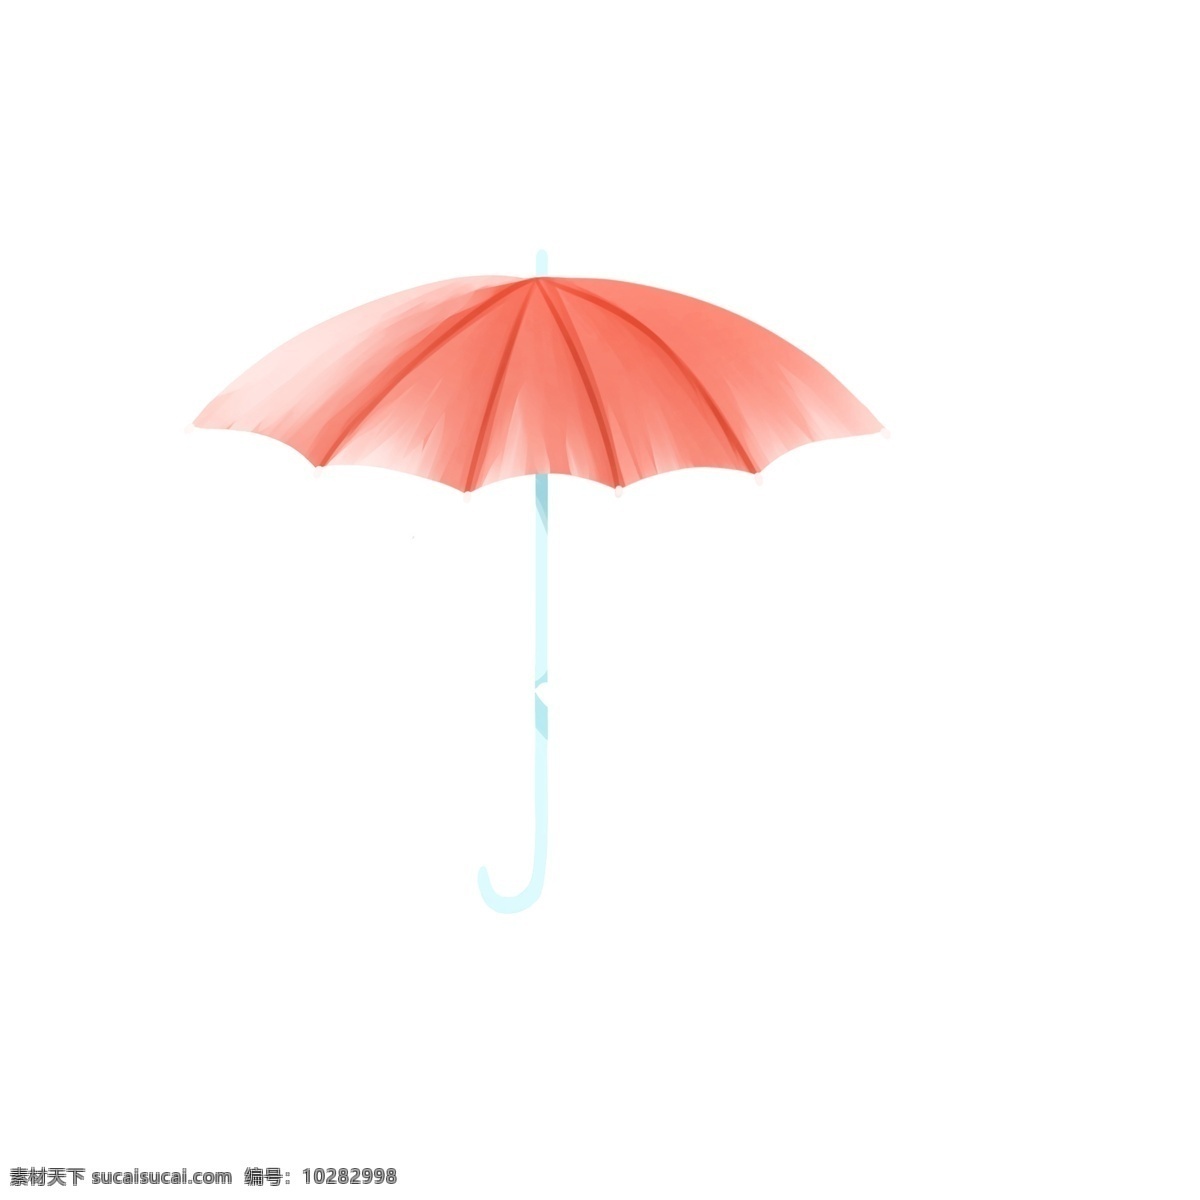 手绘 小 清新 一把 粉色 伞 红色 雨伞 小伞 雨具 插画